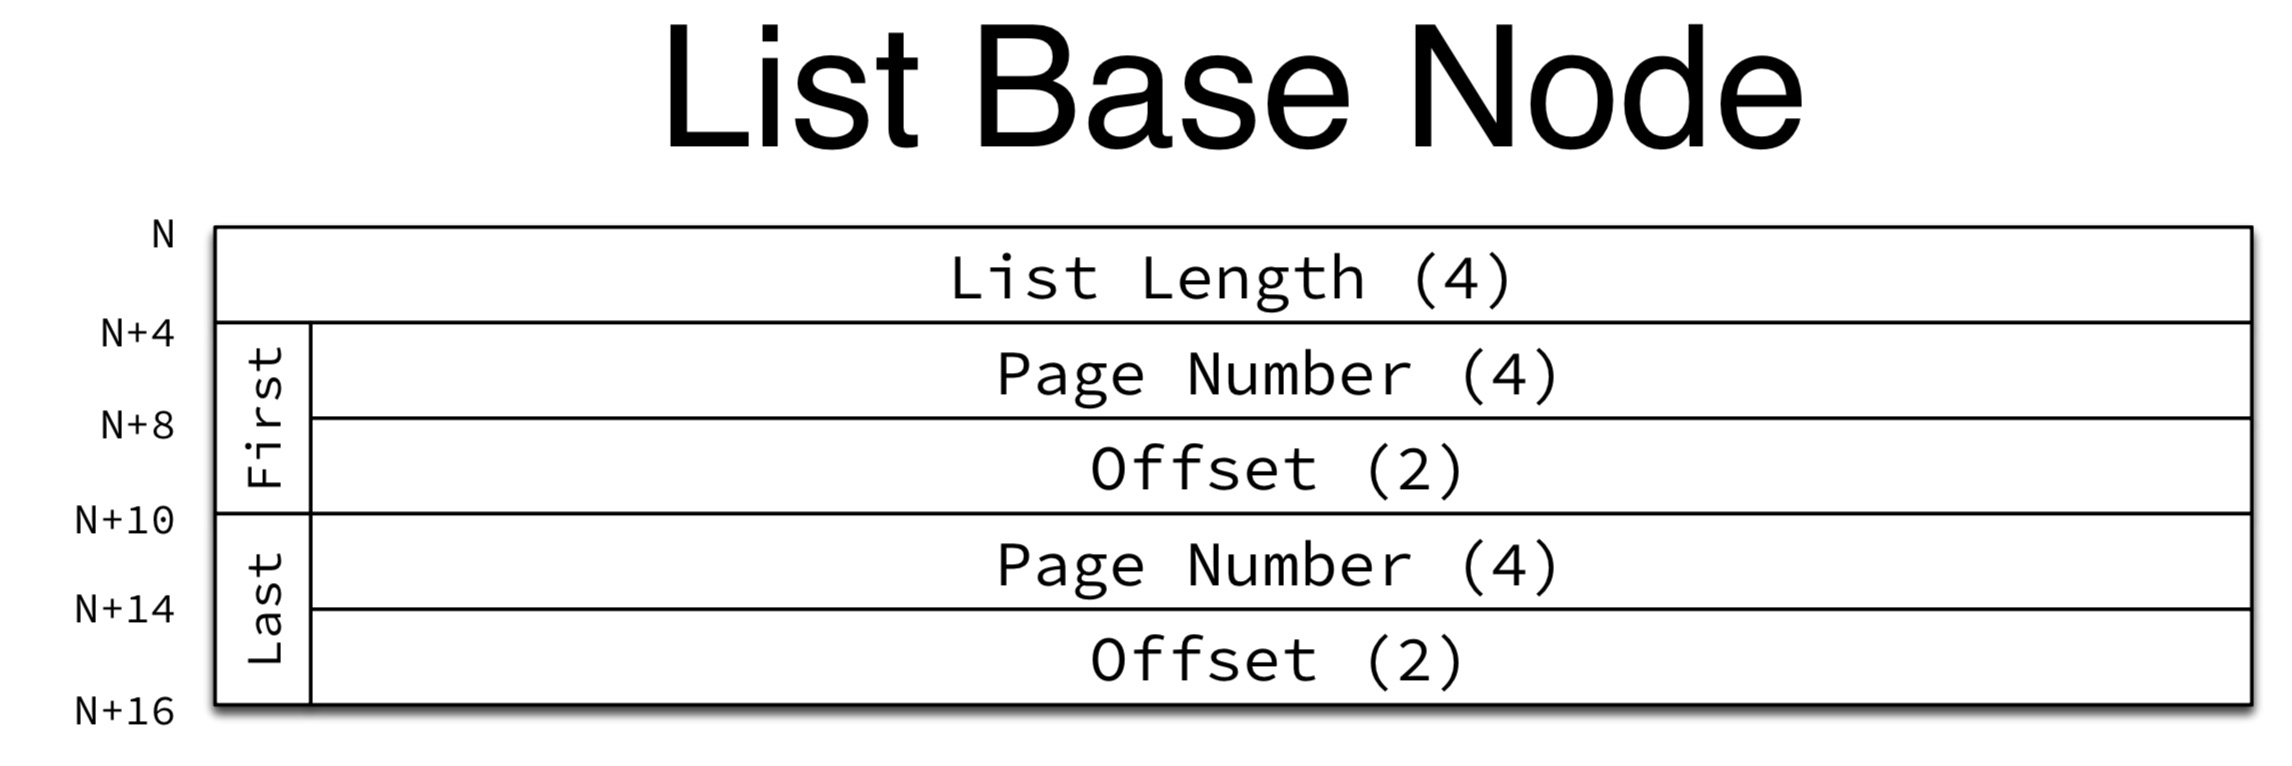 list_base_node